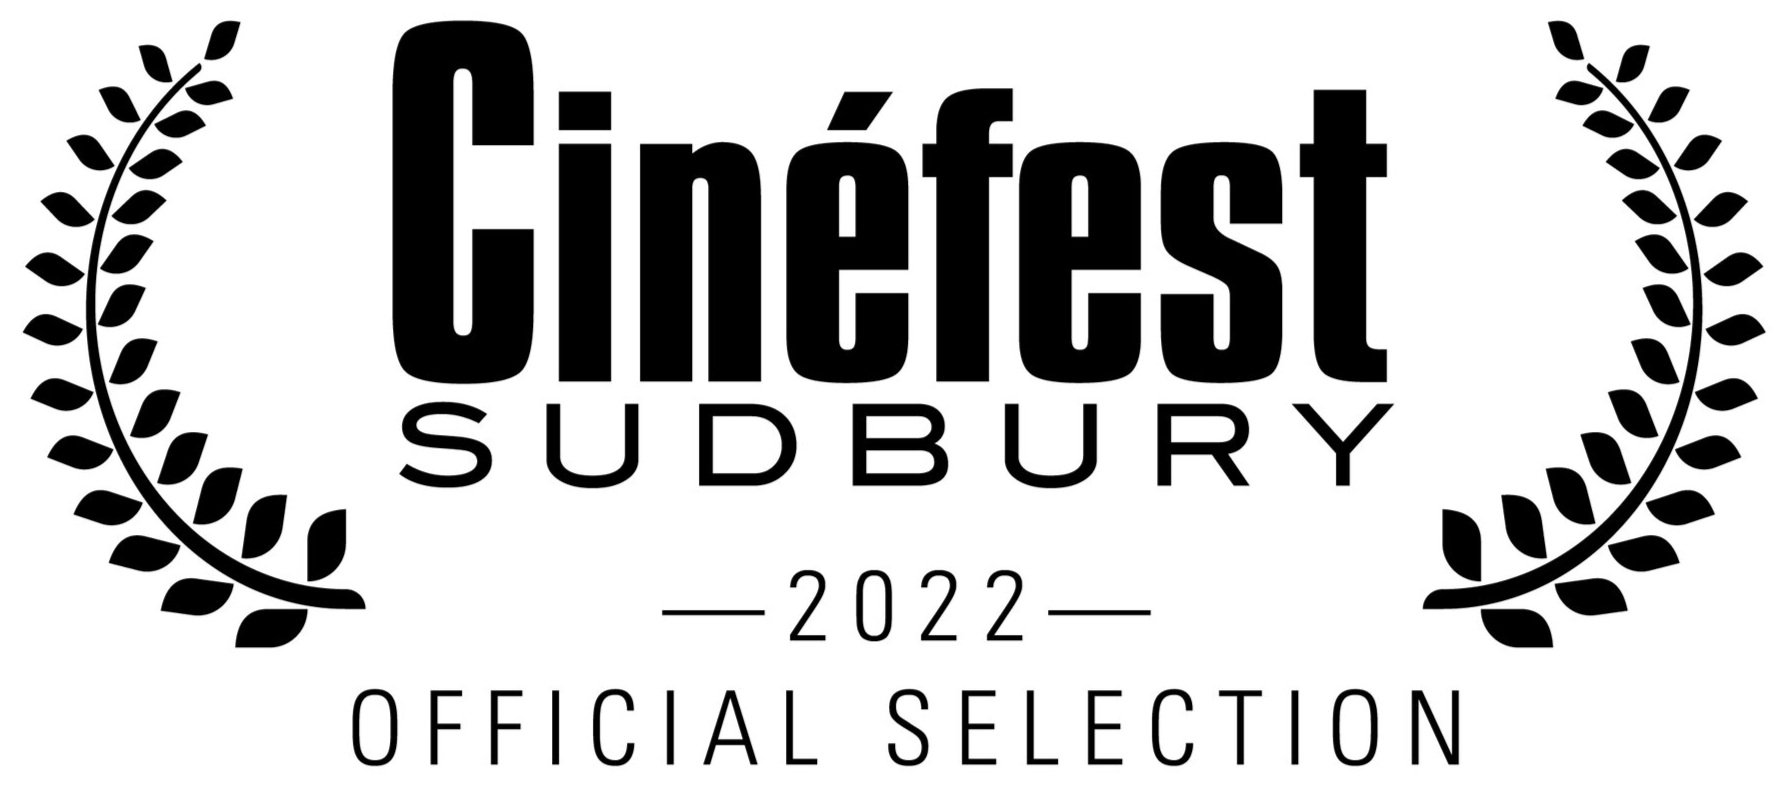 2022-cine%CC%81fest+laurels-black+text_Official+Selection.jpg